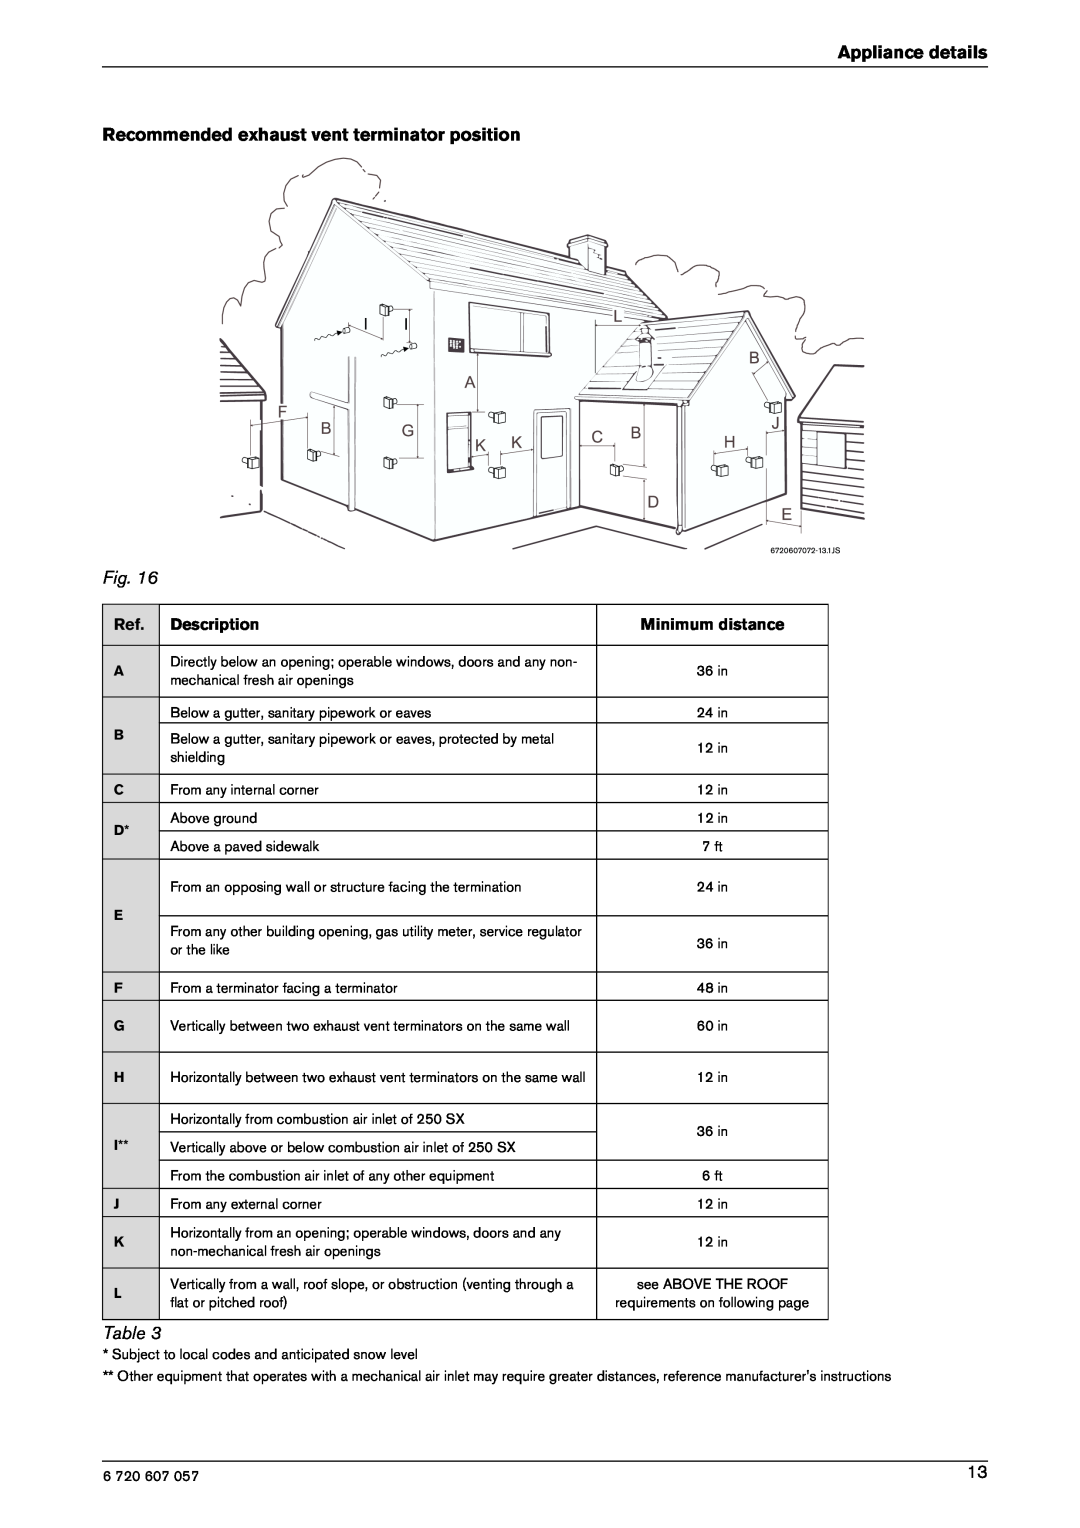 Bosch Appliances 250SX NG Appliance details Recommended exhaust vent terminator position, Description, Minimum distance 